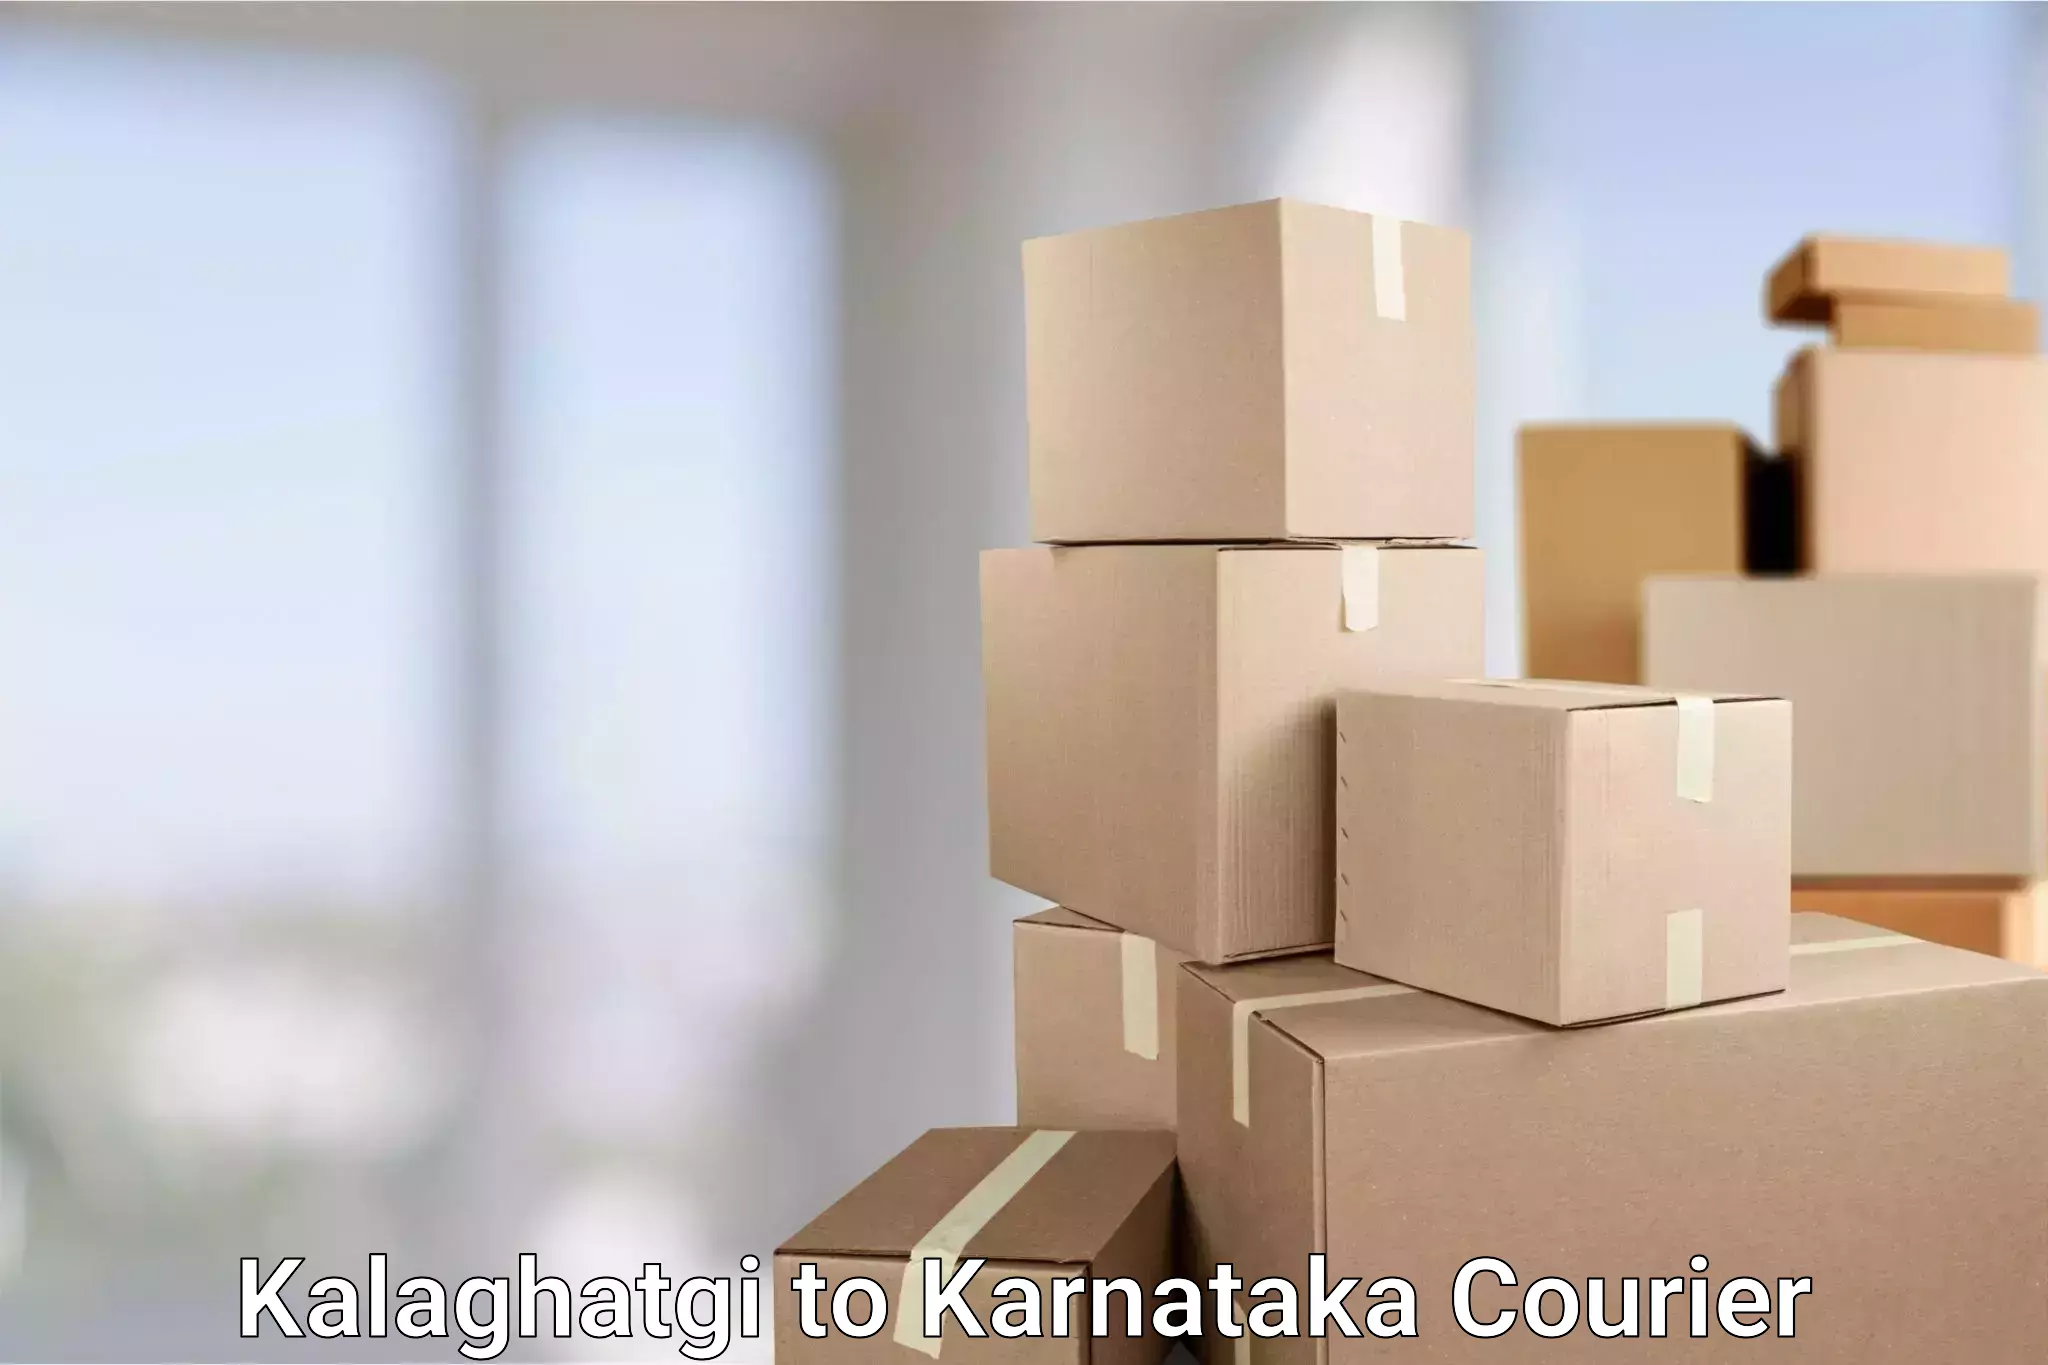 Professional delivery solutions Kalaghatgi to Karnataka